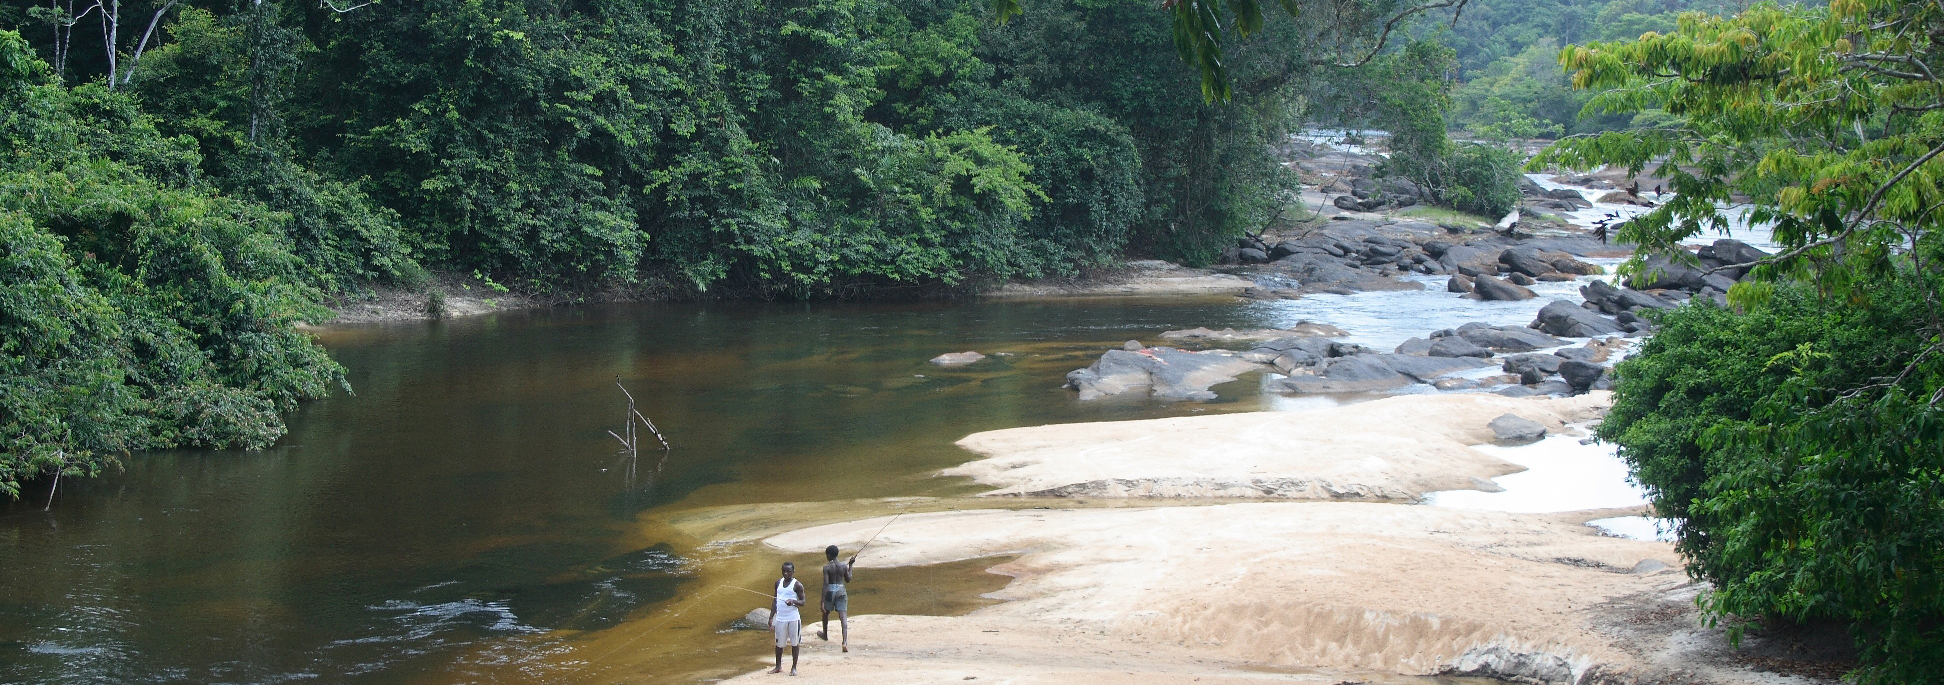 Gran Rio nahe Awarradam mit Sandbänken und großen Steinen mitten im Regenwald Surinames